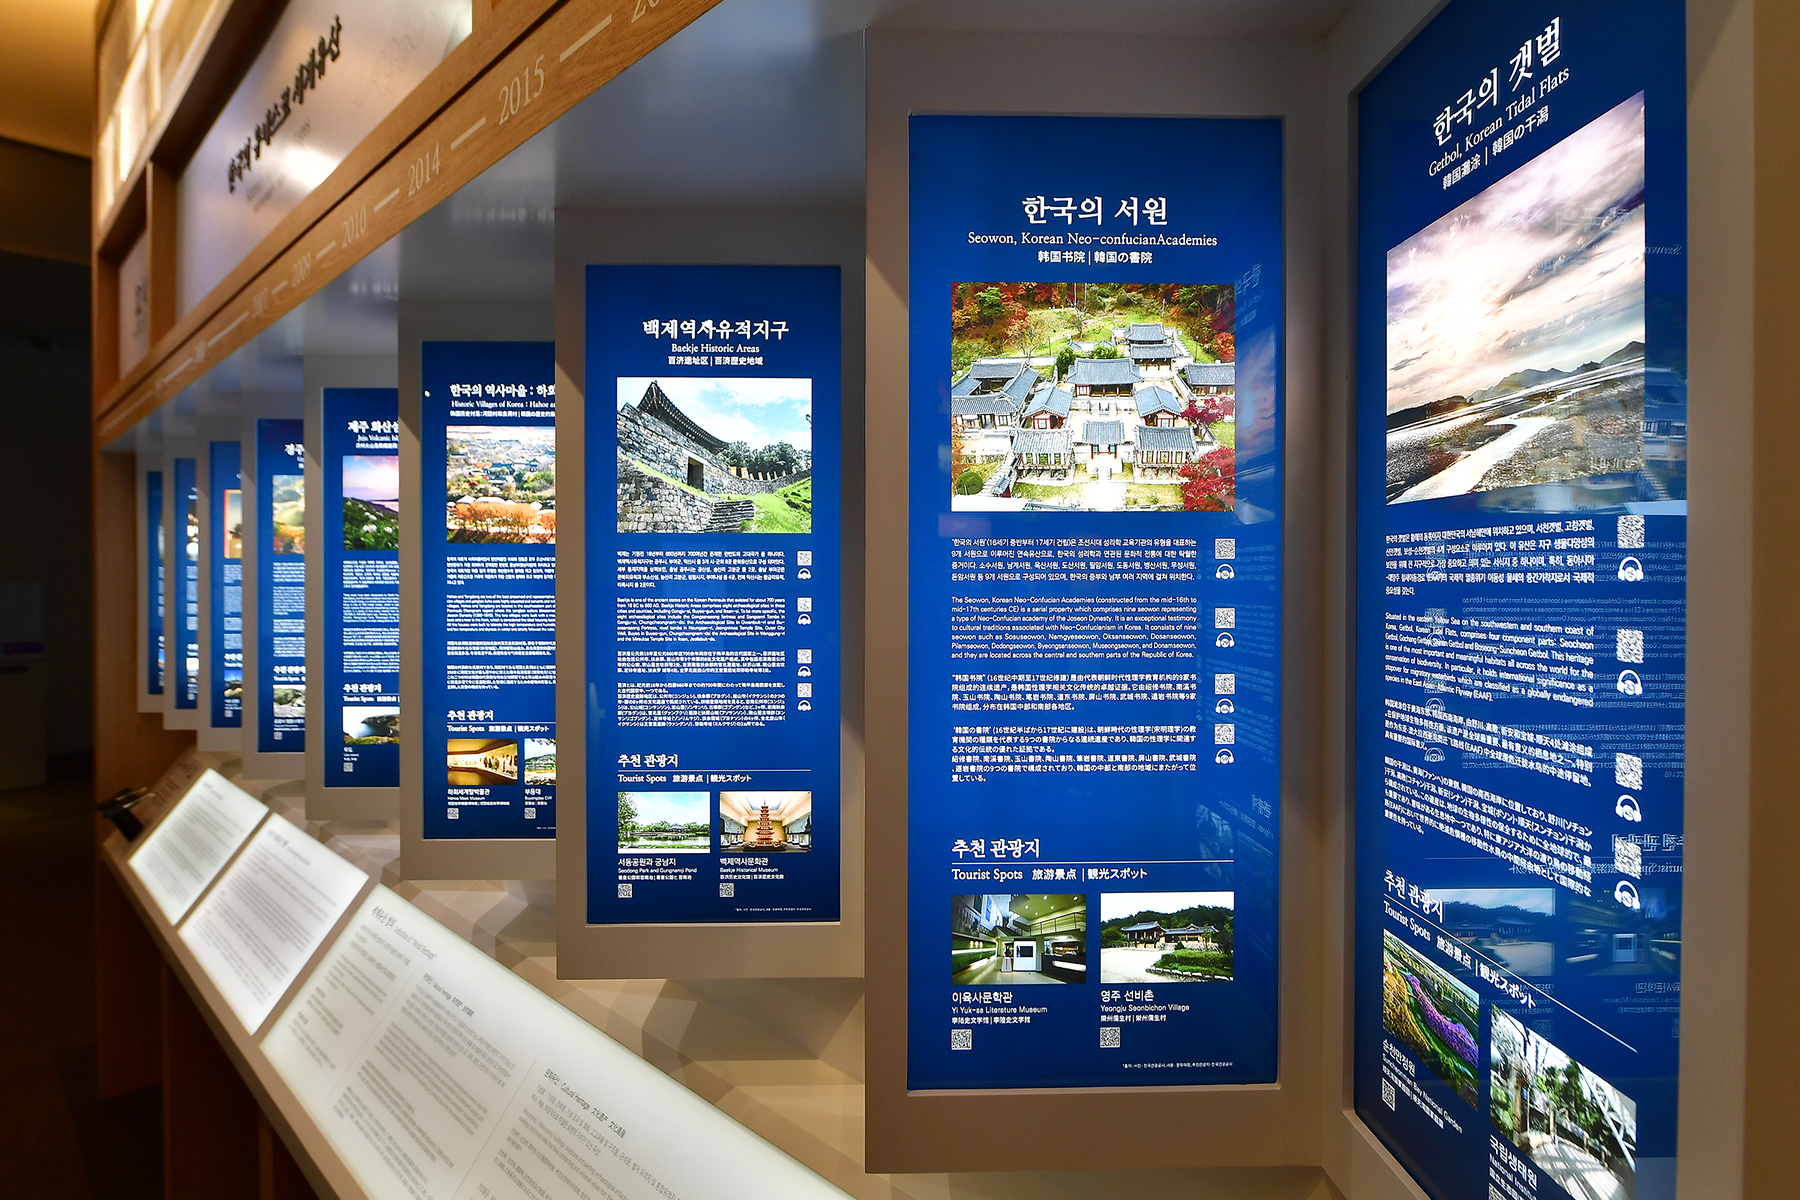 韩国观光展览馆第一层 主题 2. 美丽的韩国 7